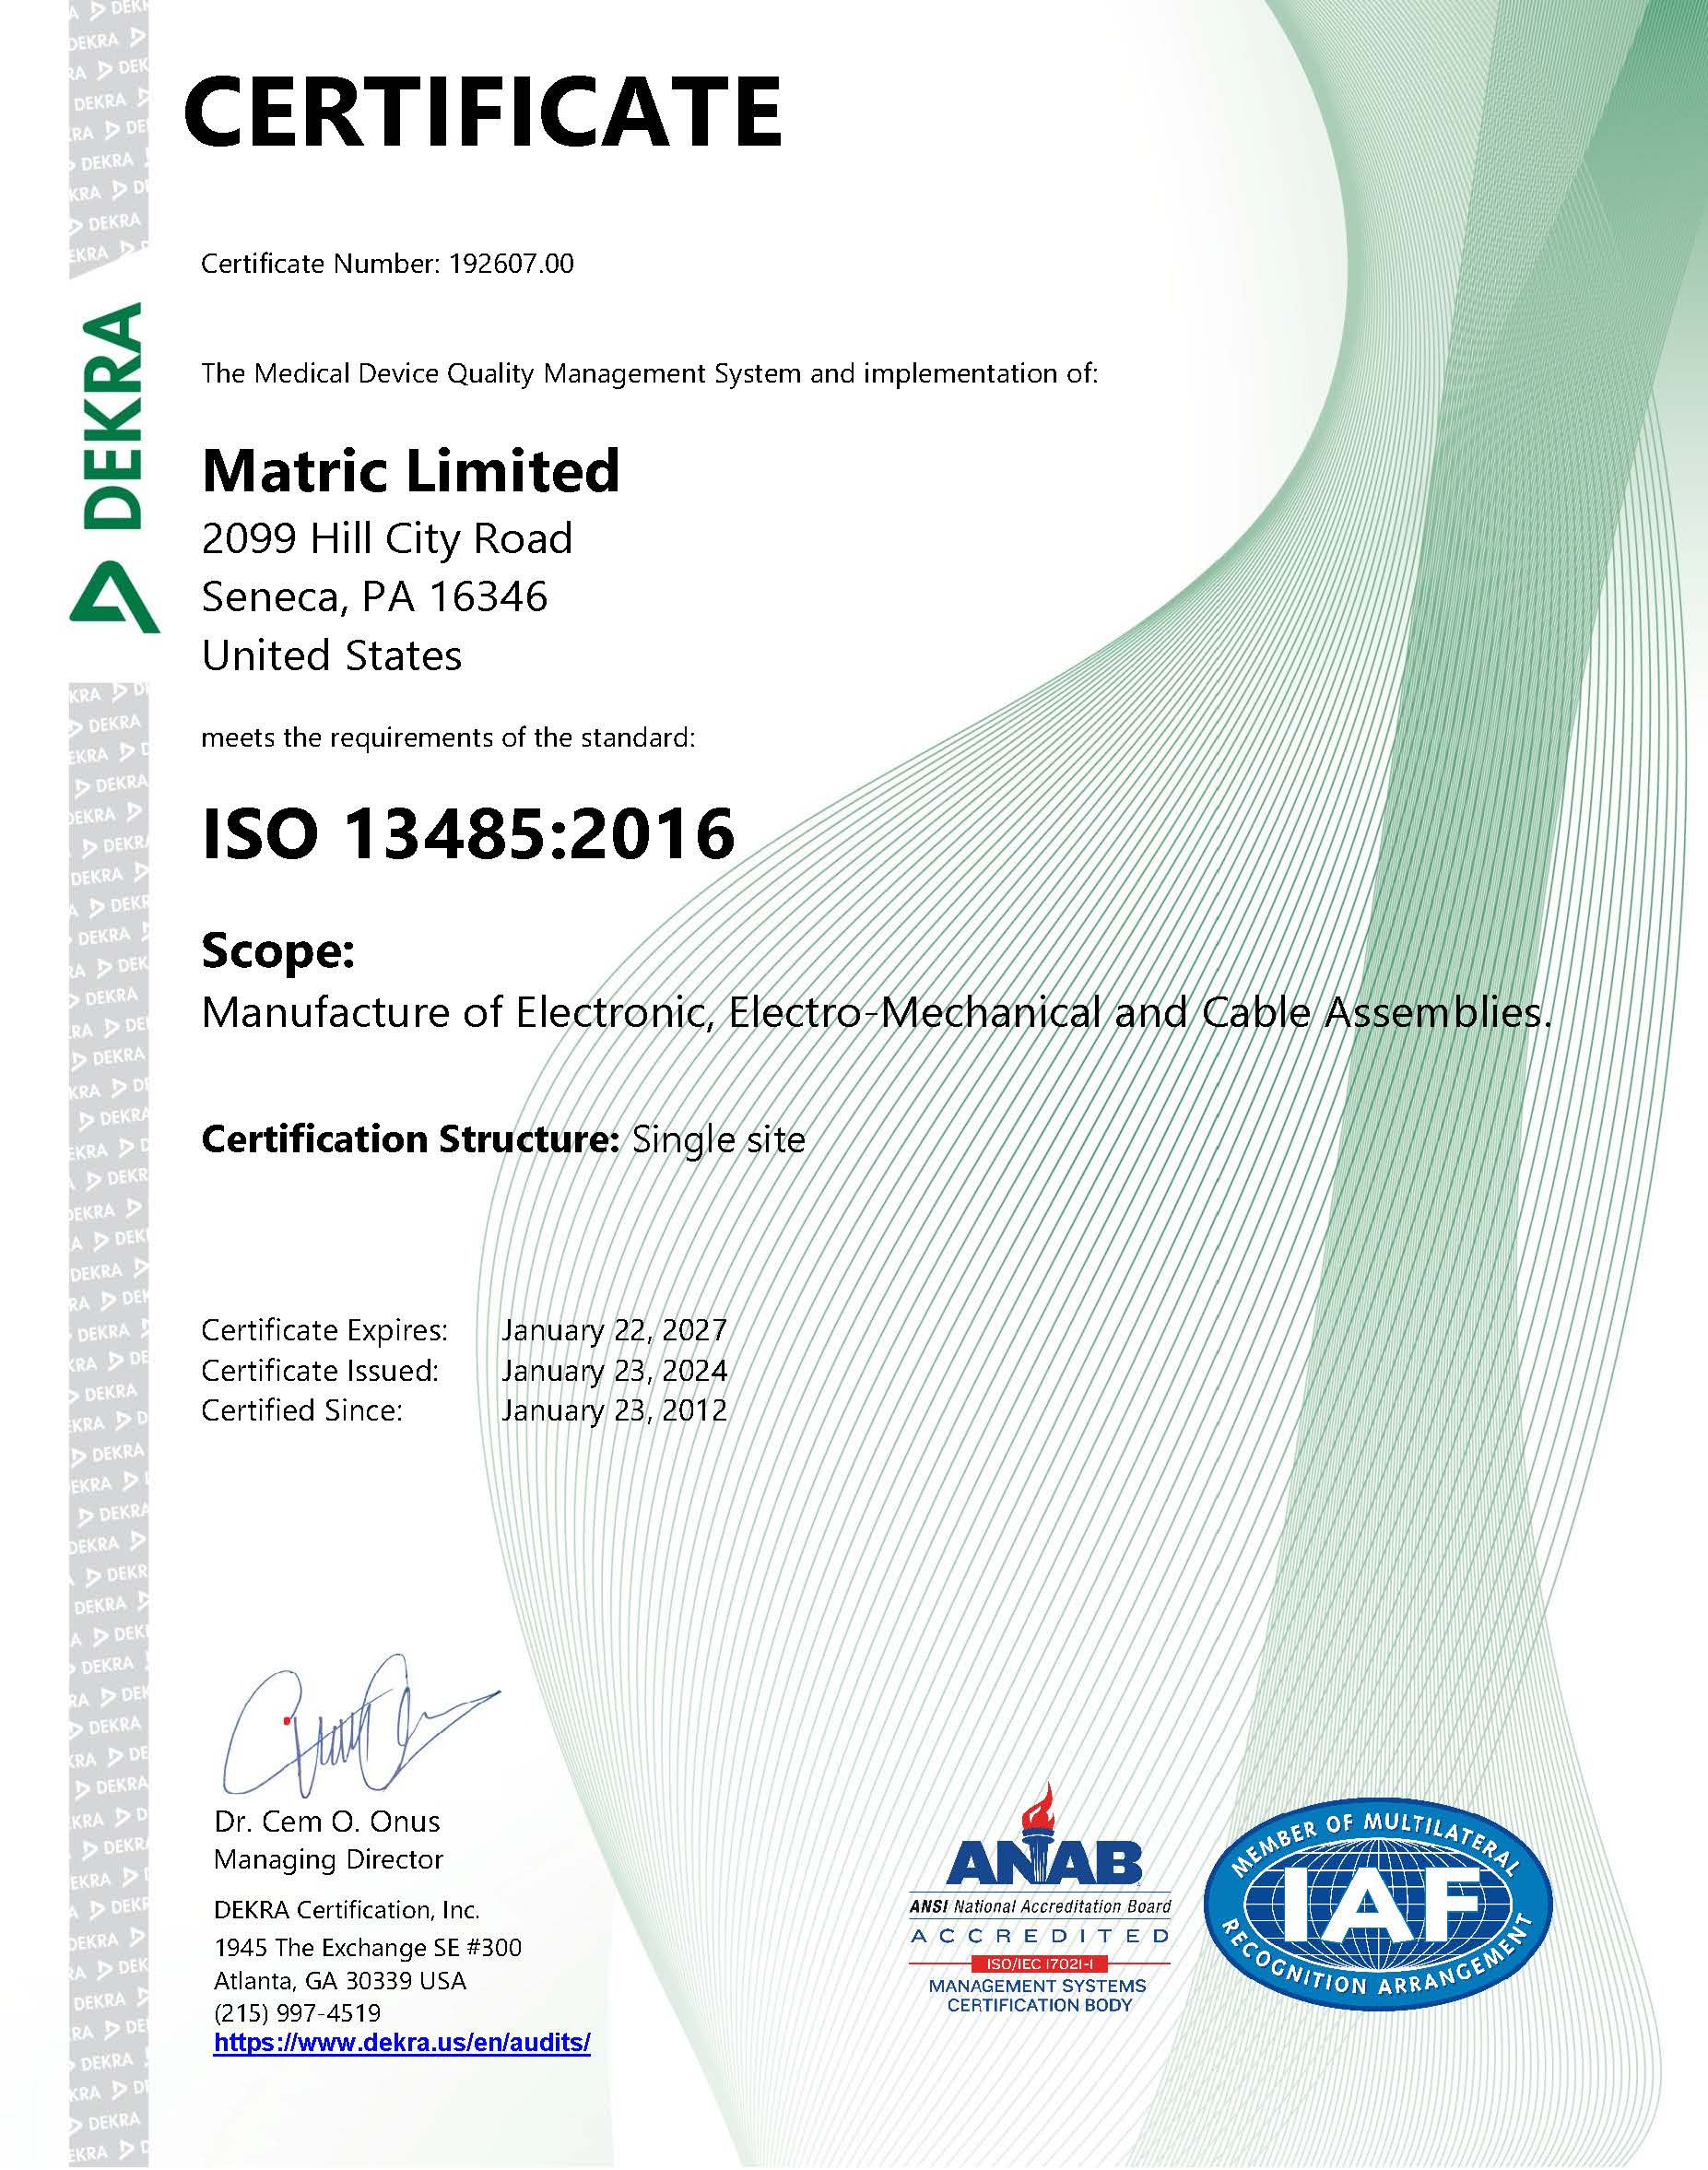 Data 01-03 Rev 10 13485-2016 Certificate Reissued January 23, 2023